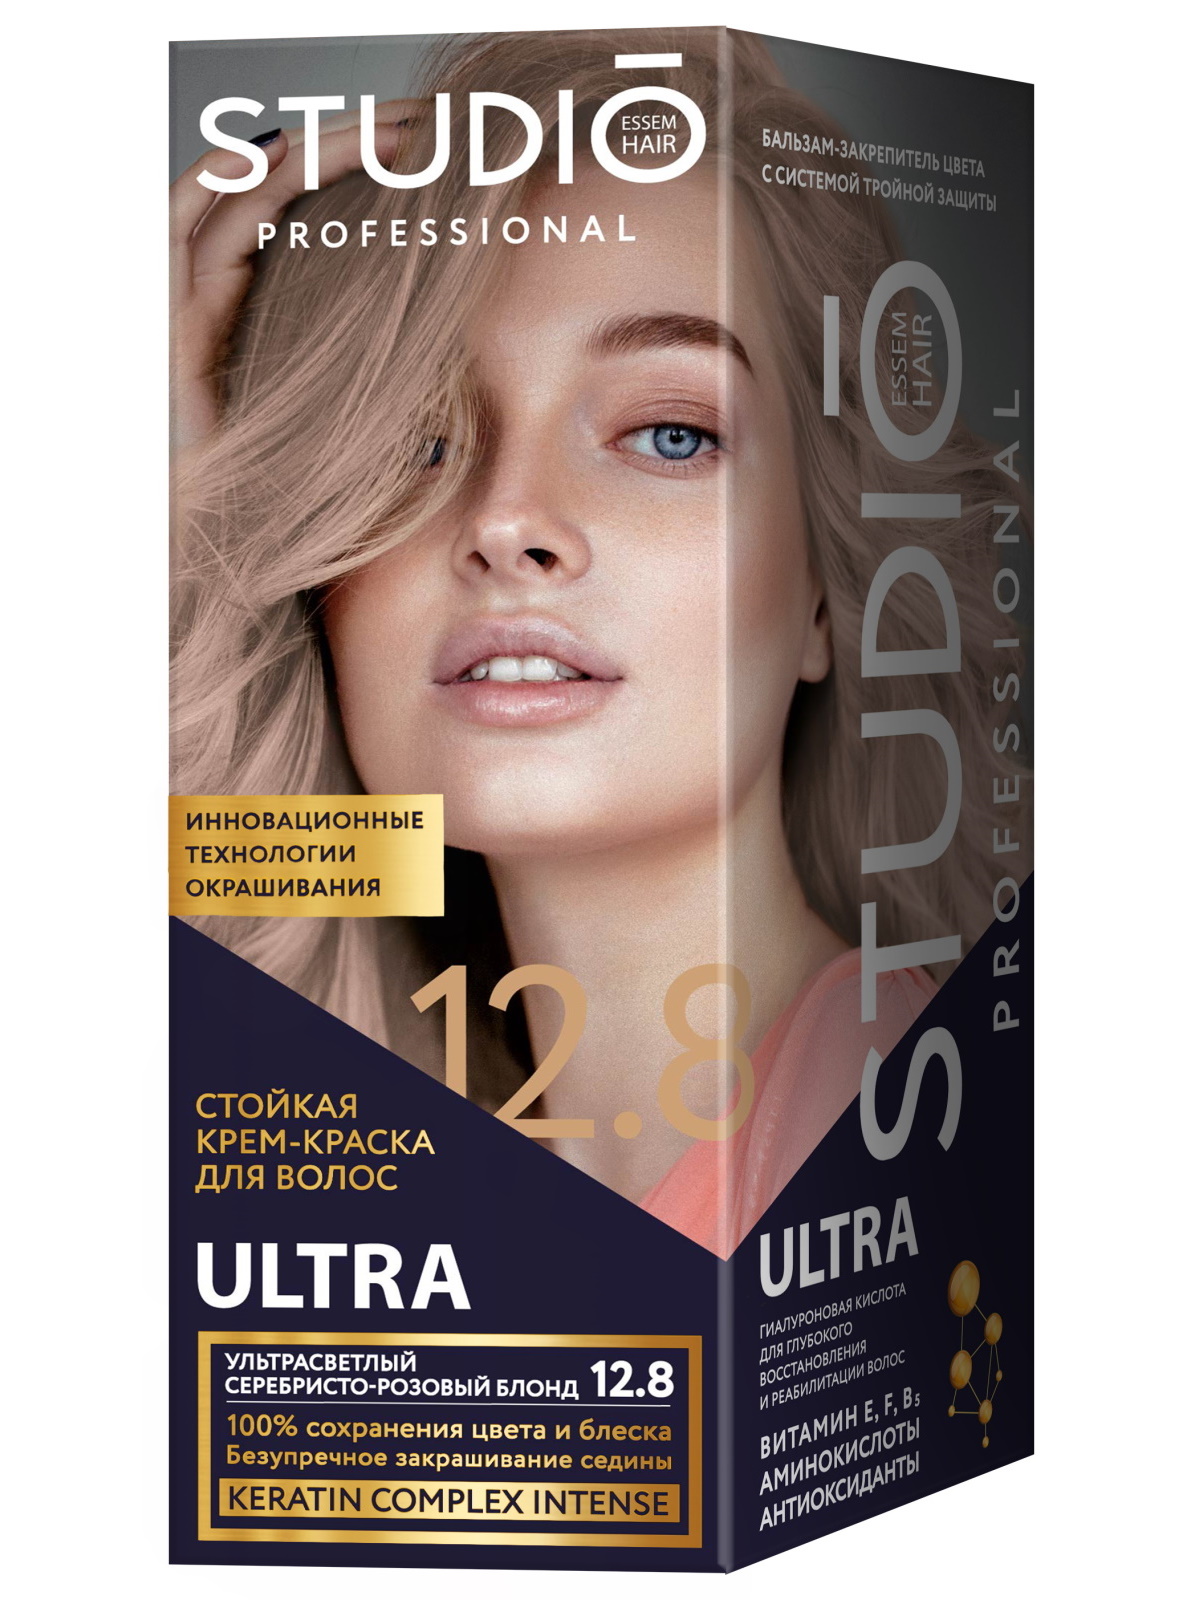 Комплект ULTRA STUDIO PROFESSIONAL 12.8 ультрасветлый серебристо-розовый блонд 2*50+15 мл zeitun шампунь для тонких и хрупких волос с иранской хной эффект ламинирования lamination effect